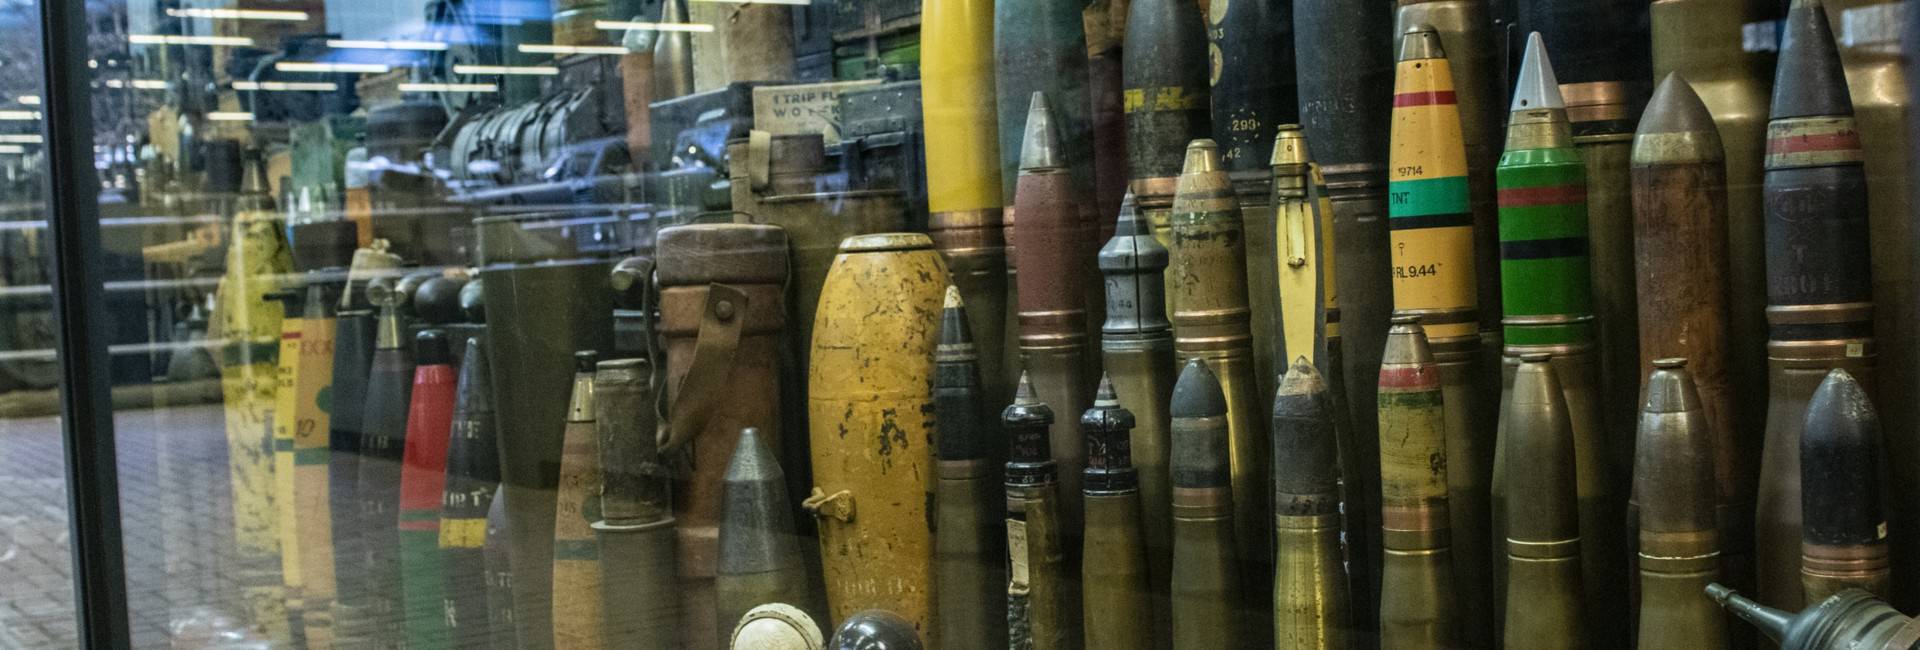 oorlogsmuseum - 1000 Bombs and Grenades